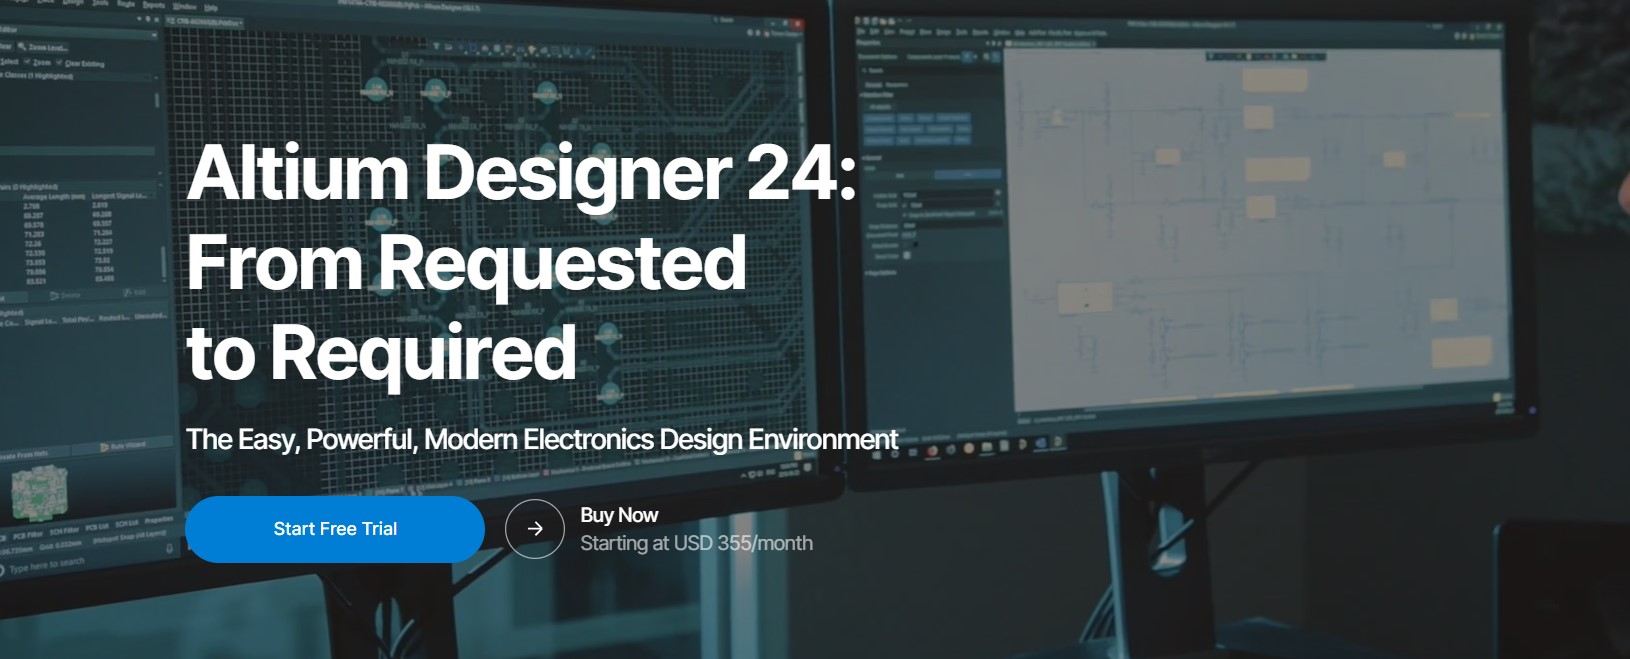 Altium Designer 24 คือซอฟต์แวร์ออกแบบพีซีบี อันดับ#1 ของโลก ใช้งานง่าย แม่นยำ รองรับงานออกแบบหลายหลาย ….